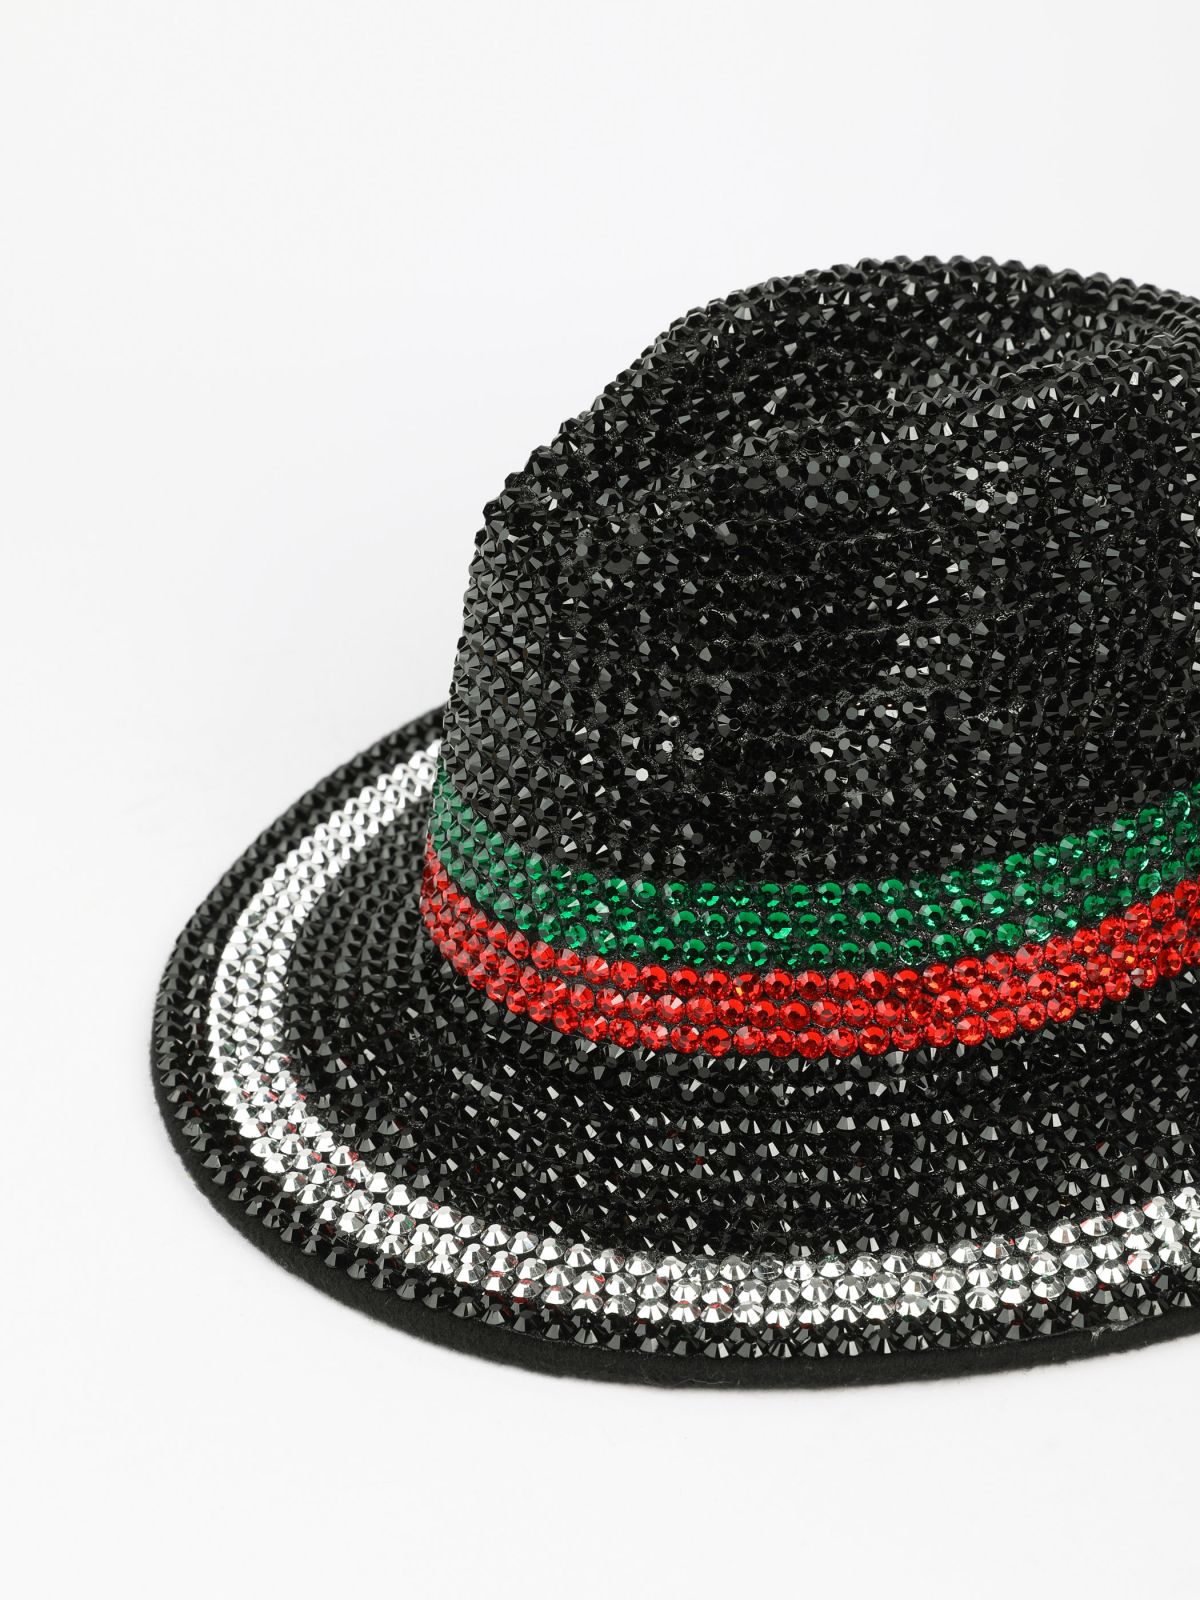  כובע בעיטור אבנים נועה קירל / Purim Collection של SHOSHI ZOHAR